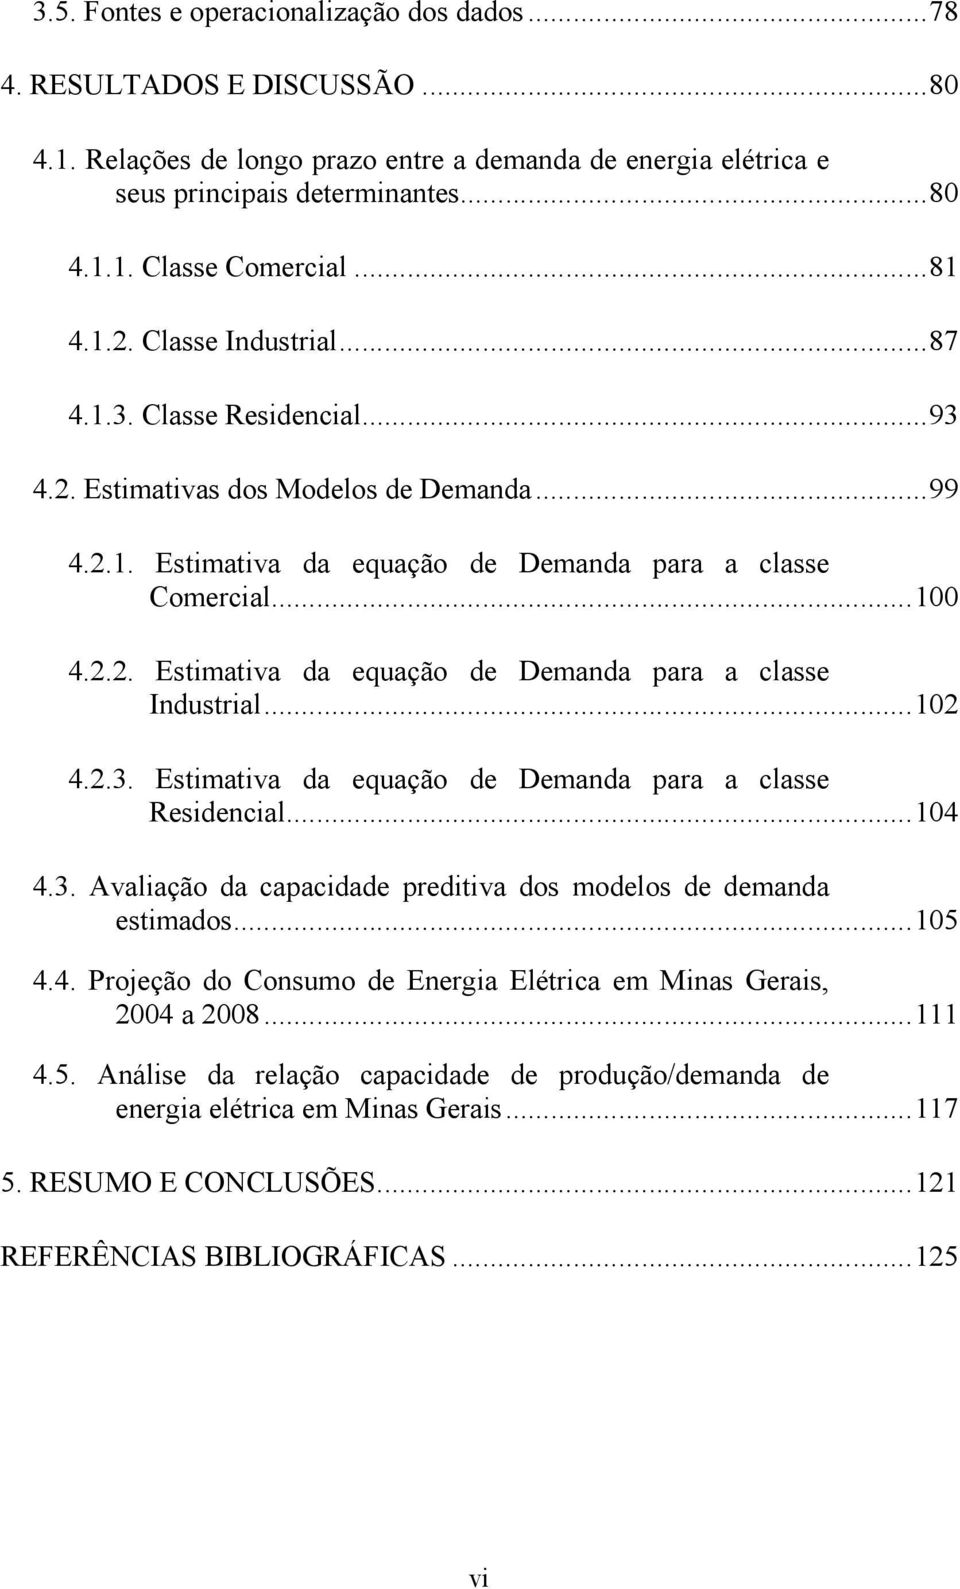 ..102 4.2.3. Esimaiva da equação de Demanda para a classe Residencial...104 4.3. Avaliação da capacidade prediiva dos modelos de demanda esimados...105 4.4. Projeção do Consumo de Energia Elérica em Minas Gerais, 2004 a 2008.